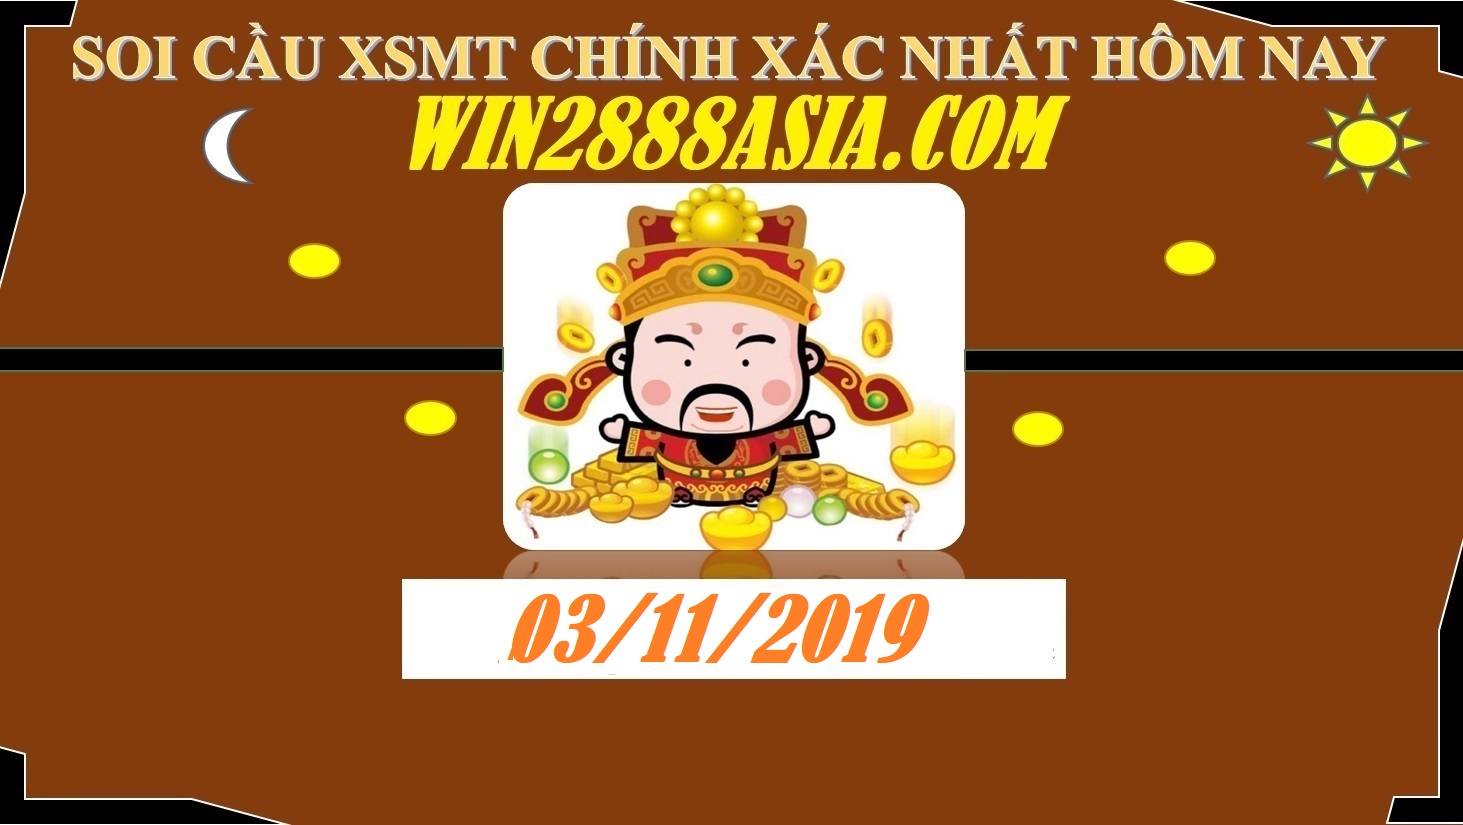 Soi cầu XSMT 3-11-2019 Win2888